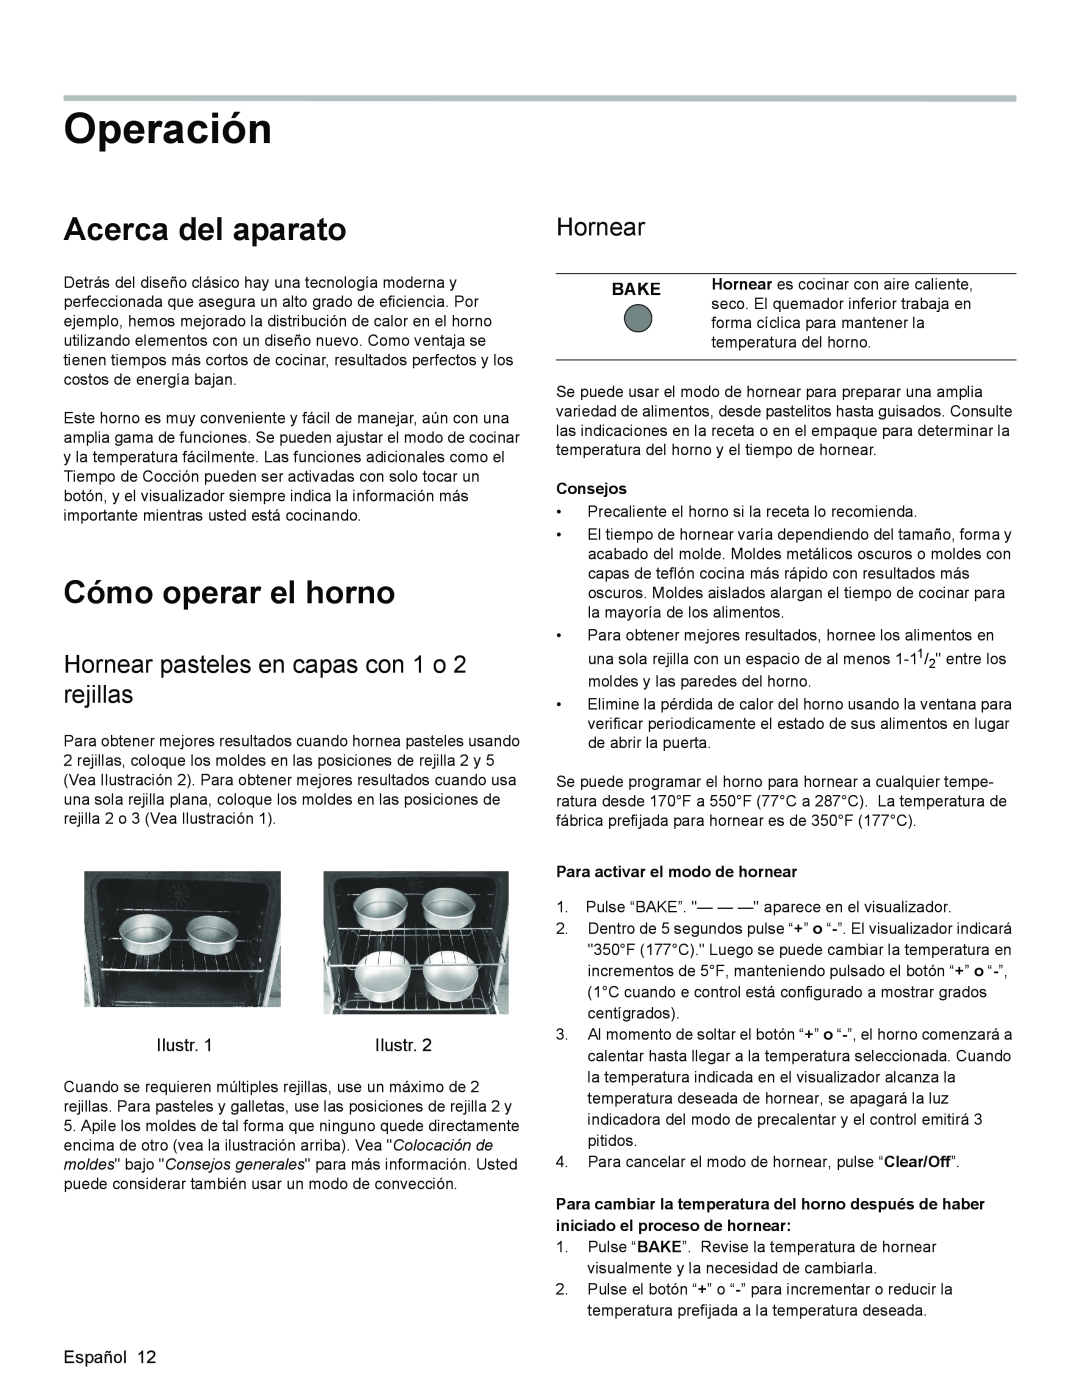 Bosch Appliances HGS3023UC manual Operación, Acerca del aparato, Cómo operar el horno, Hornear, Bake, Consejos 